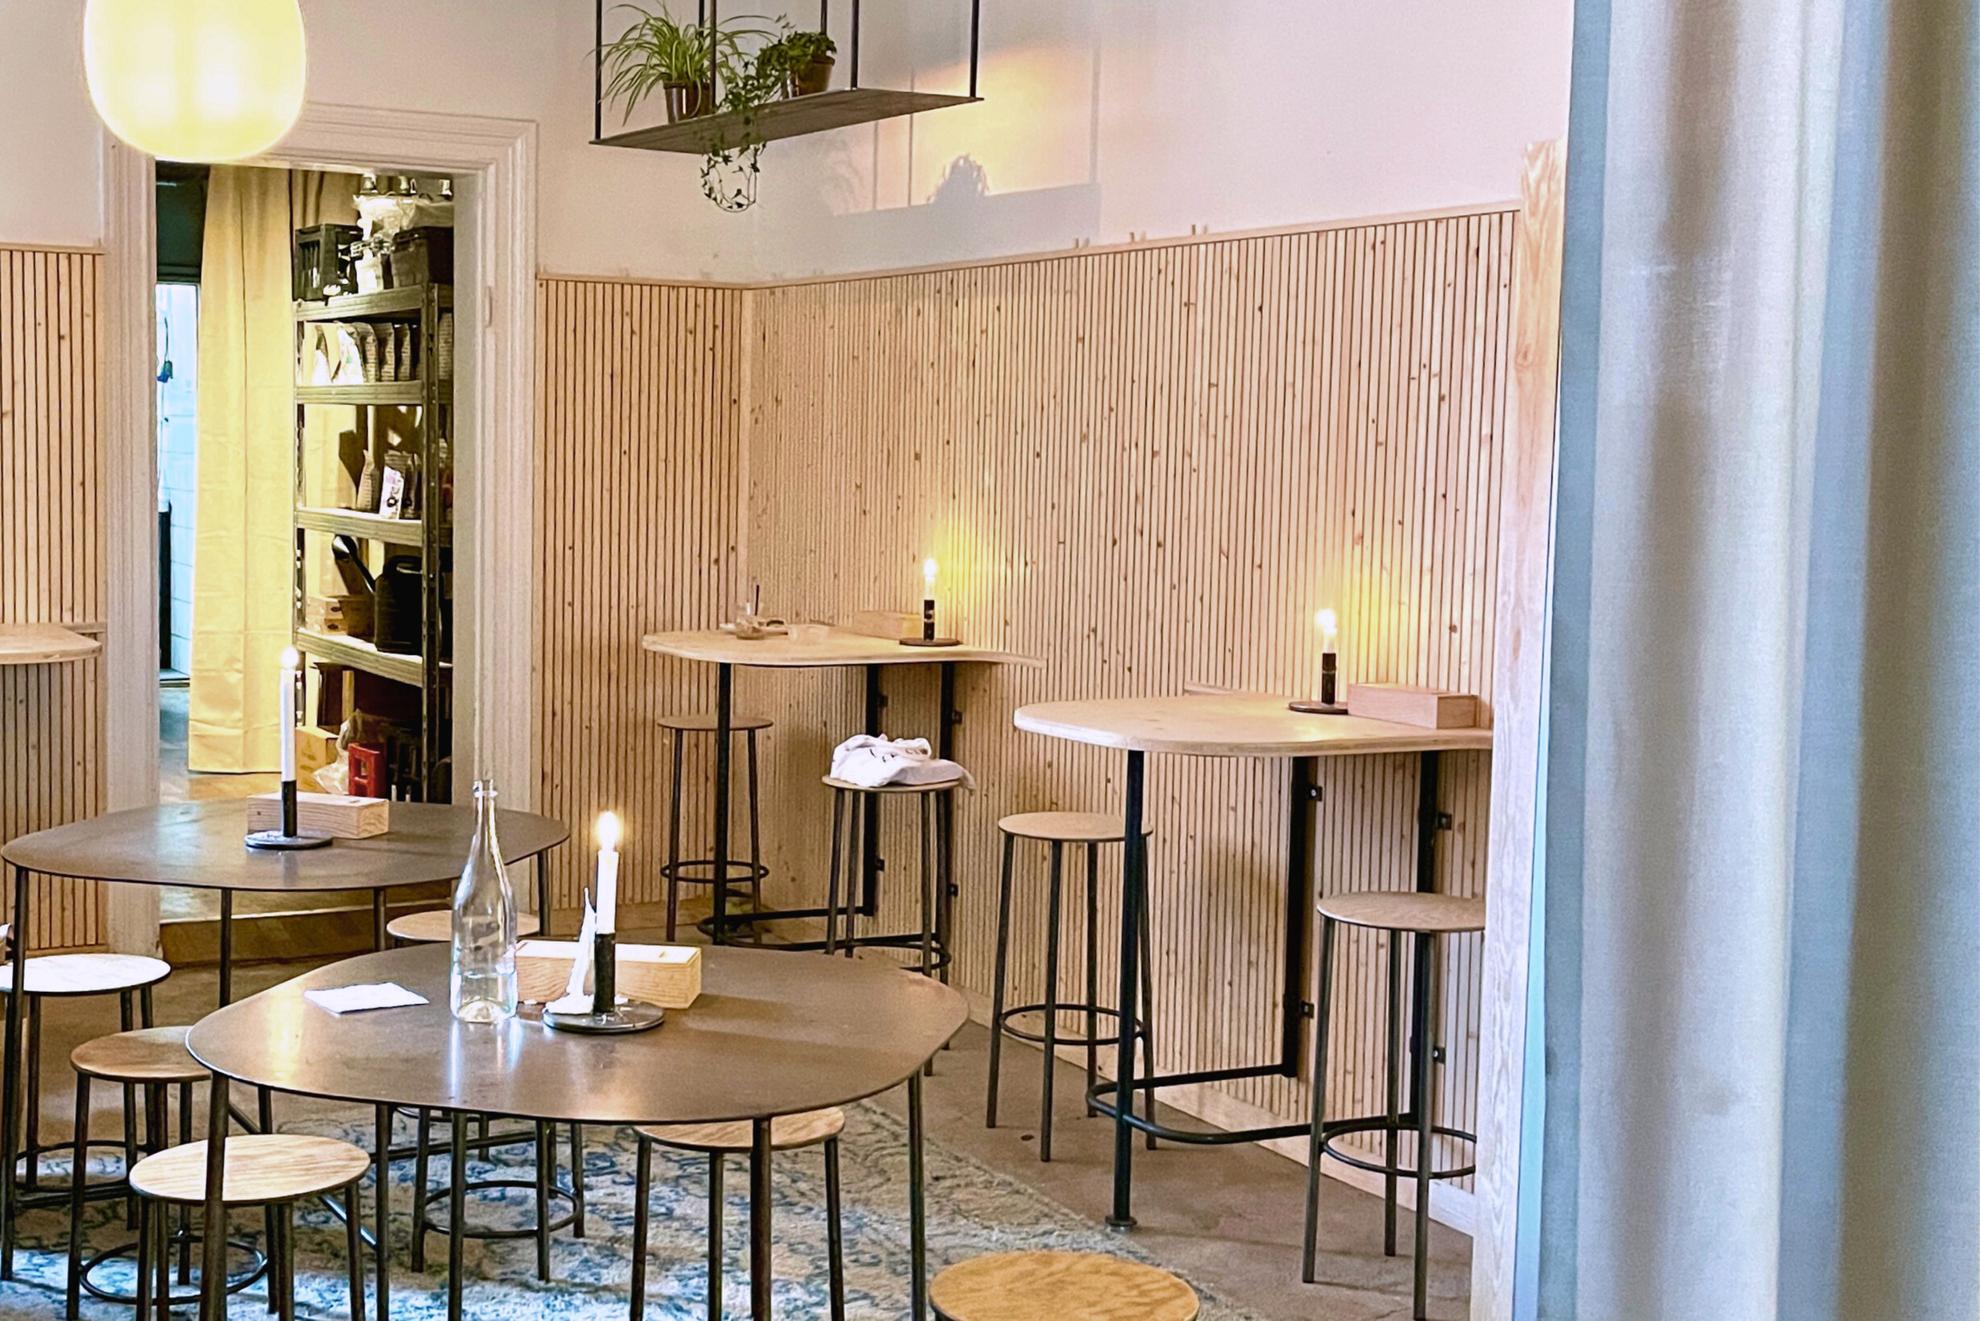 Ein Café mit Holzmöbeln und Dekoration aus Kerzen.